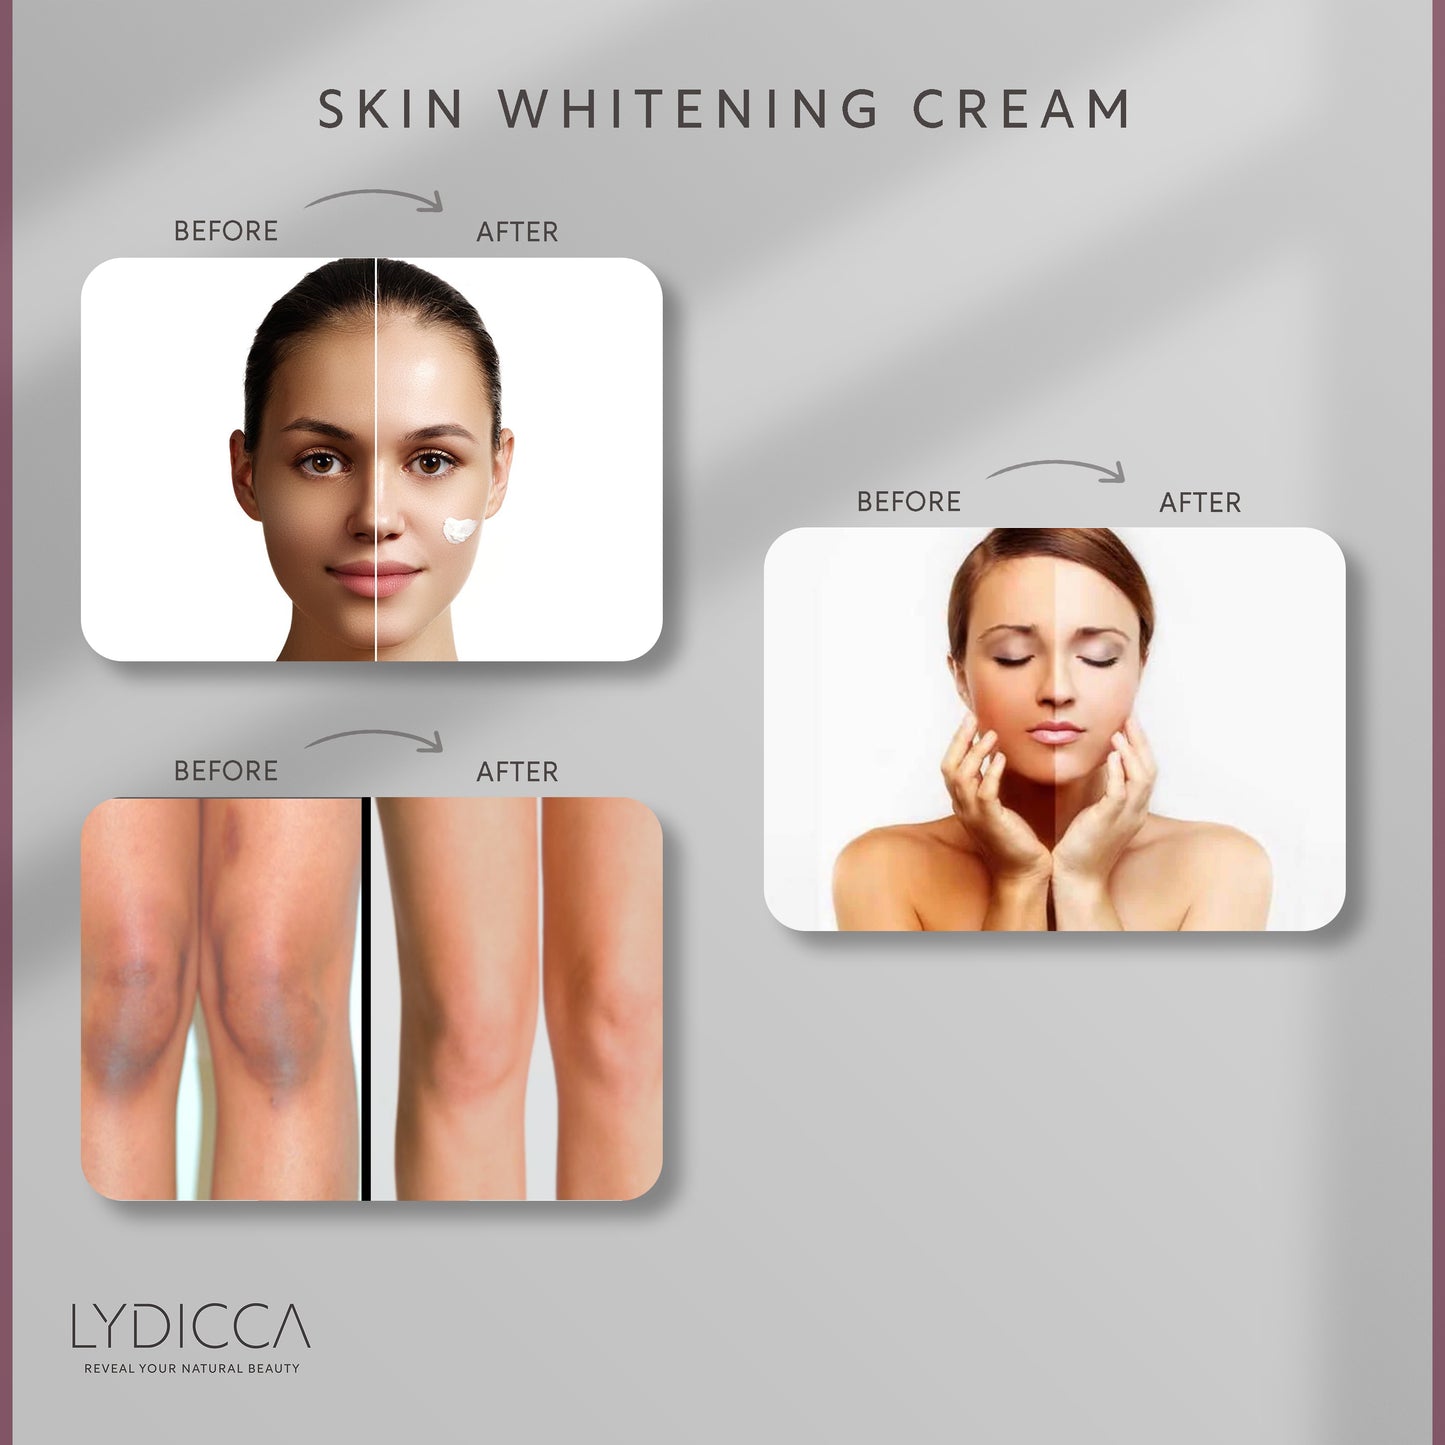 Skin Whitening Cream – Luliana